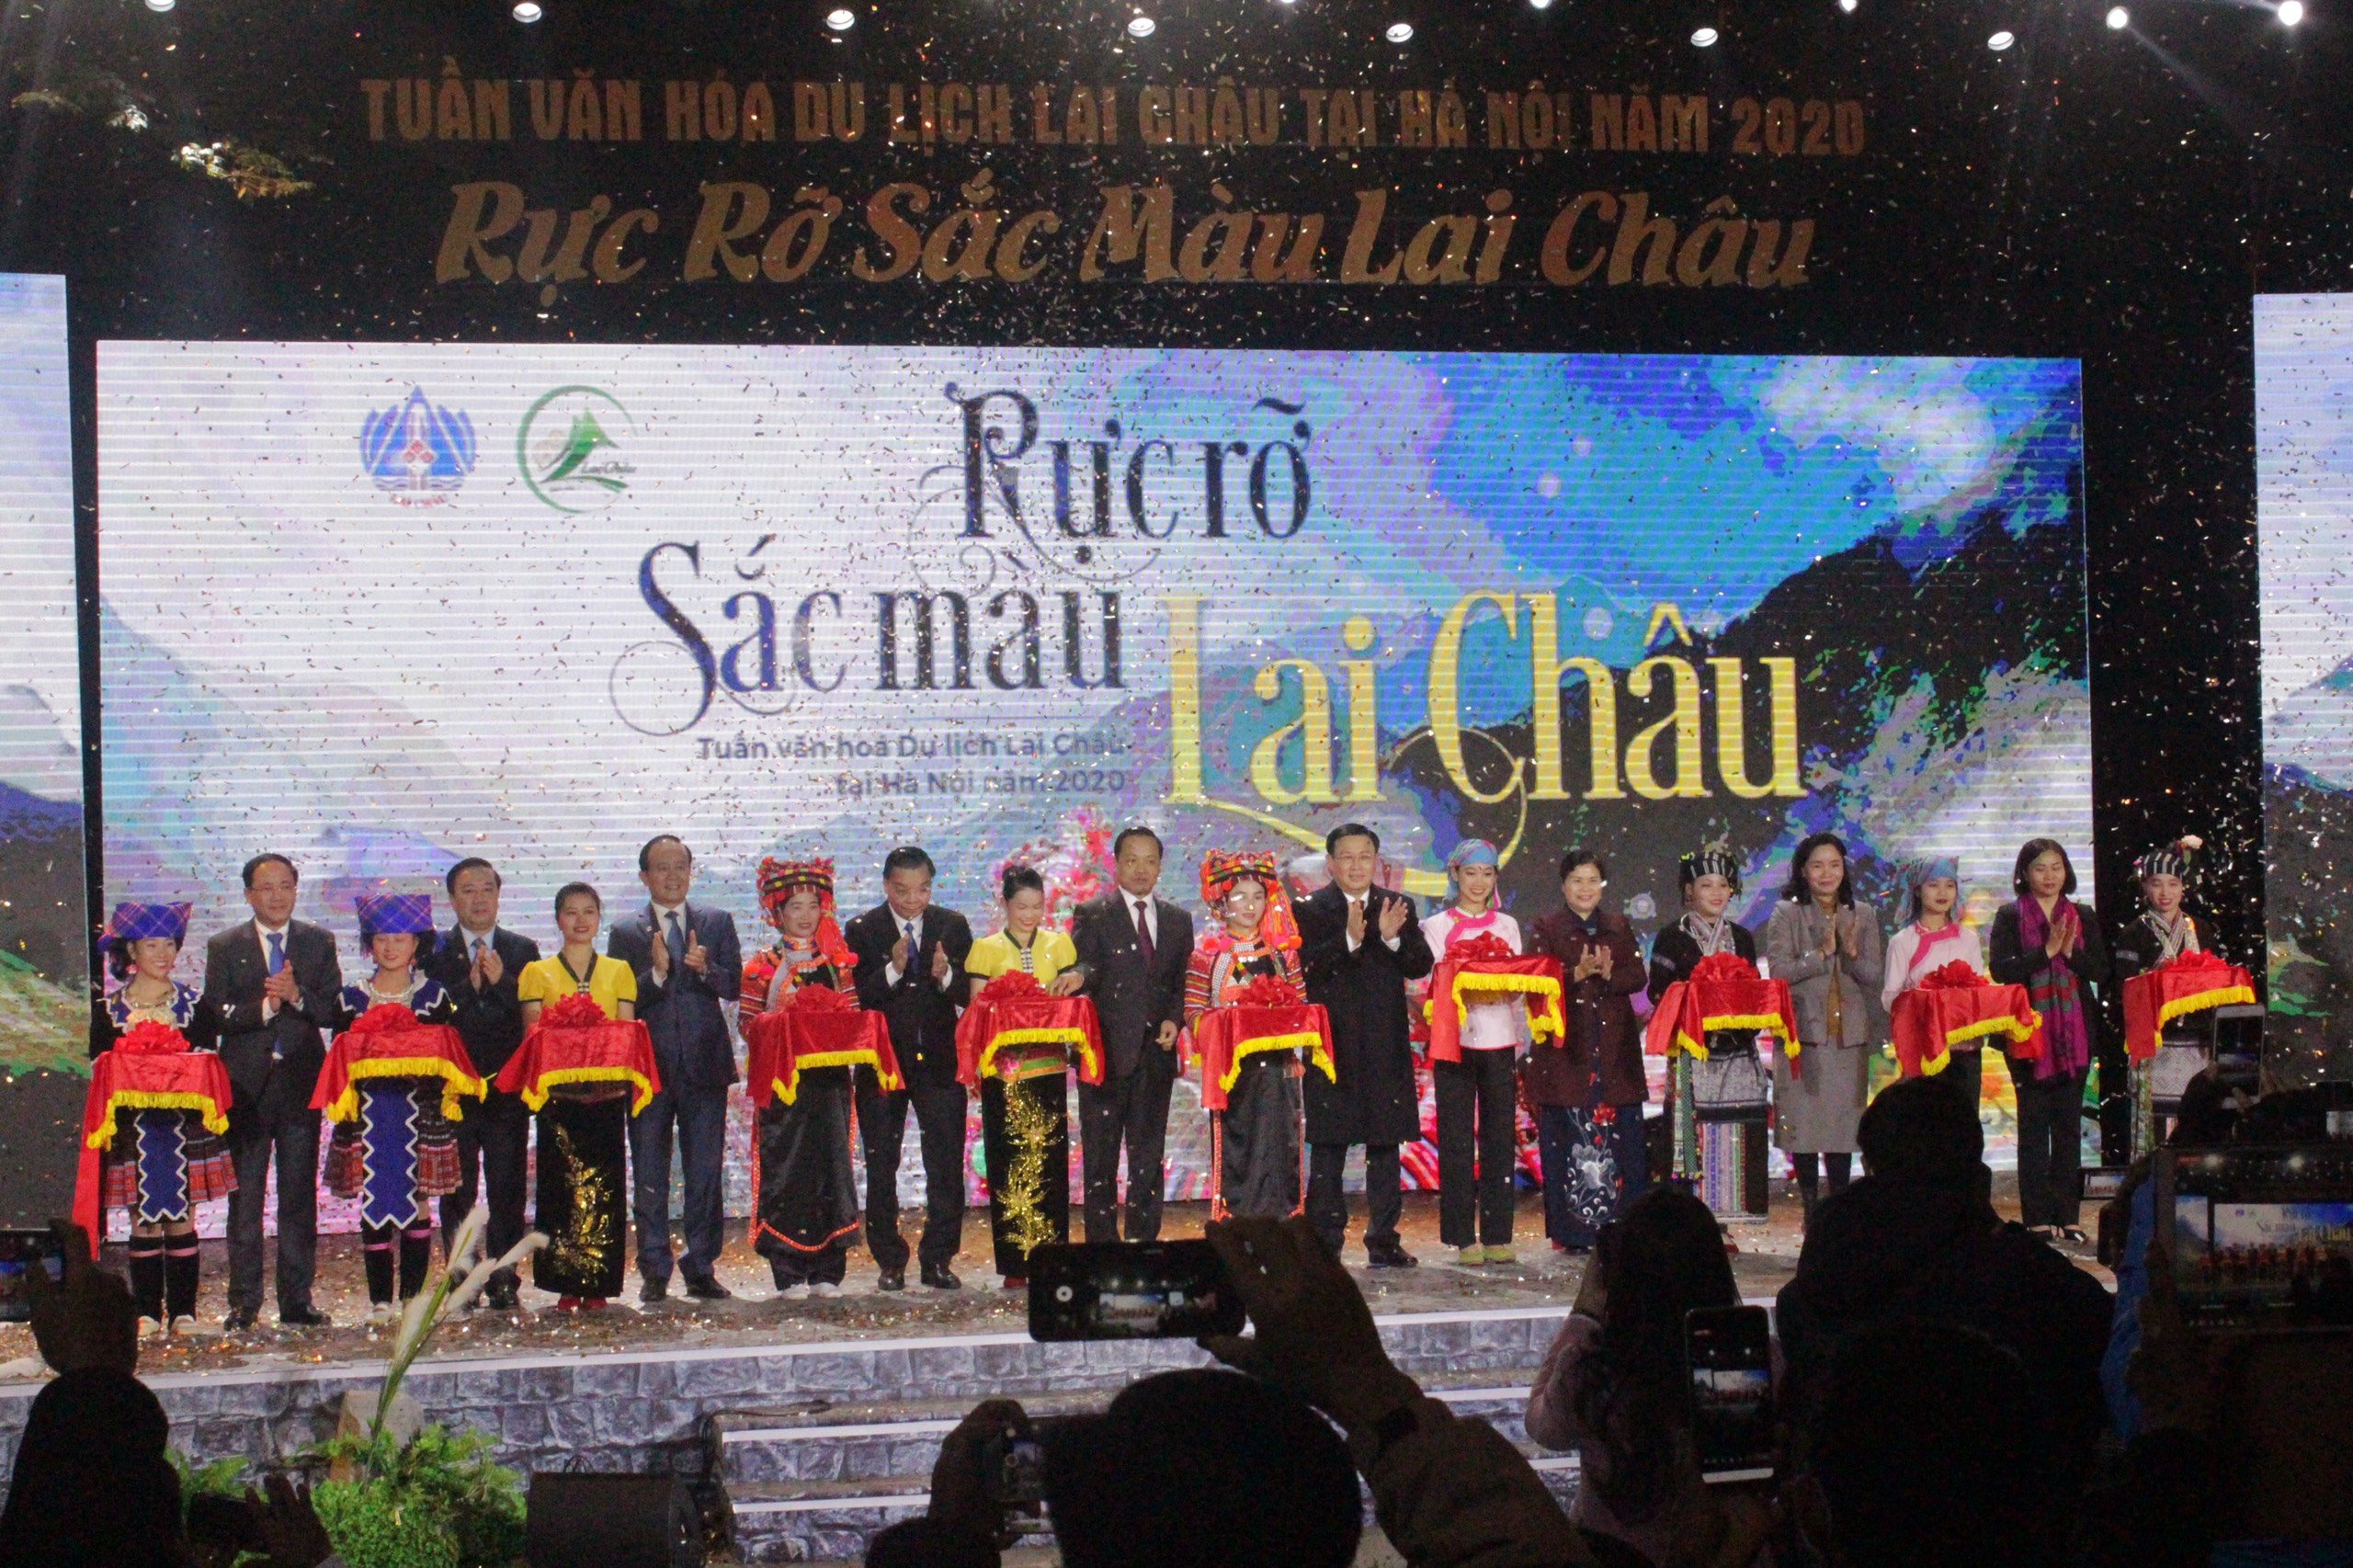 Lễ cắt băng khai mạc Tuần văn hóa du lịch Lai Châu tại Hà Nội năm 2020